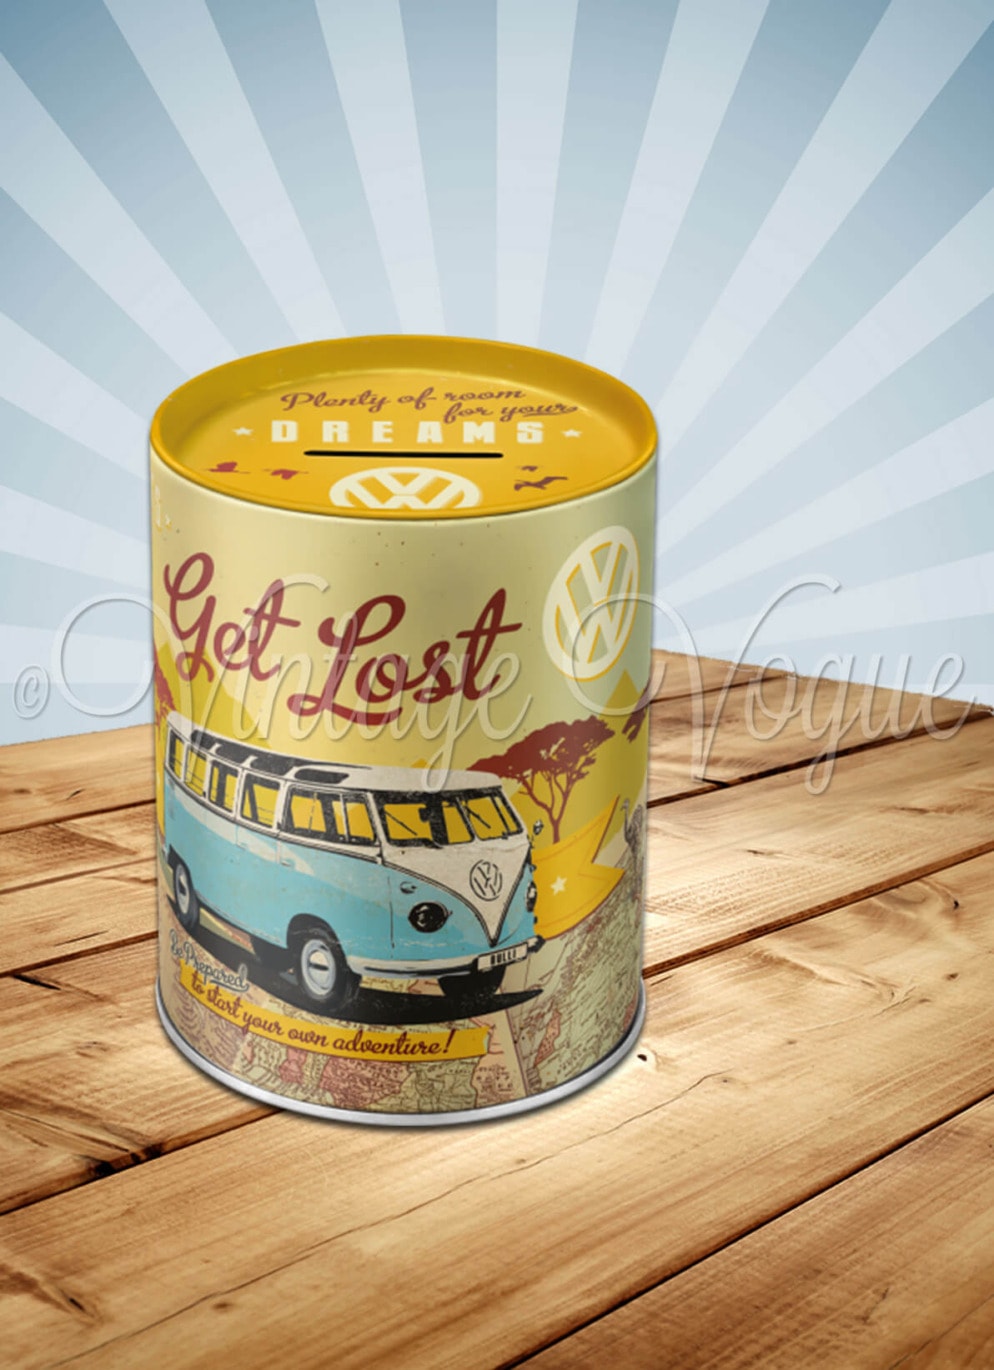 Nostalgic Art Retro Spardose VW Bulli Lets get lost Braun Gelb Spar Blechdose mit Volkswagen Bus Design